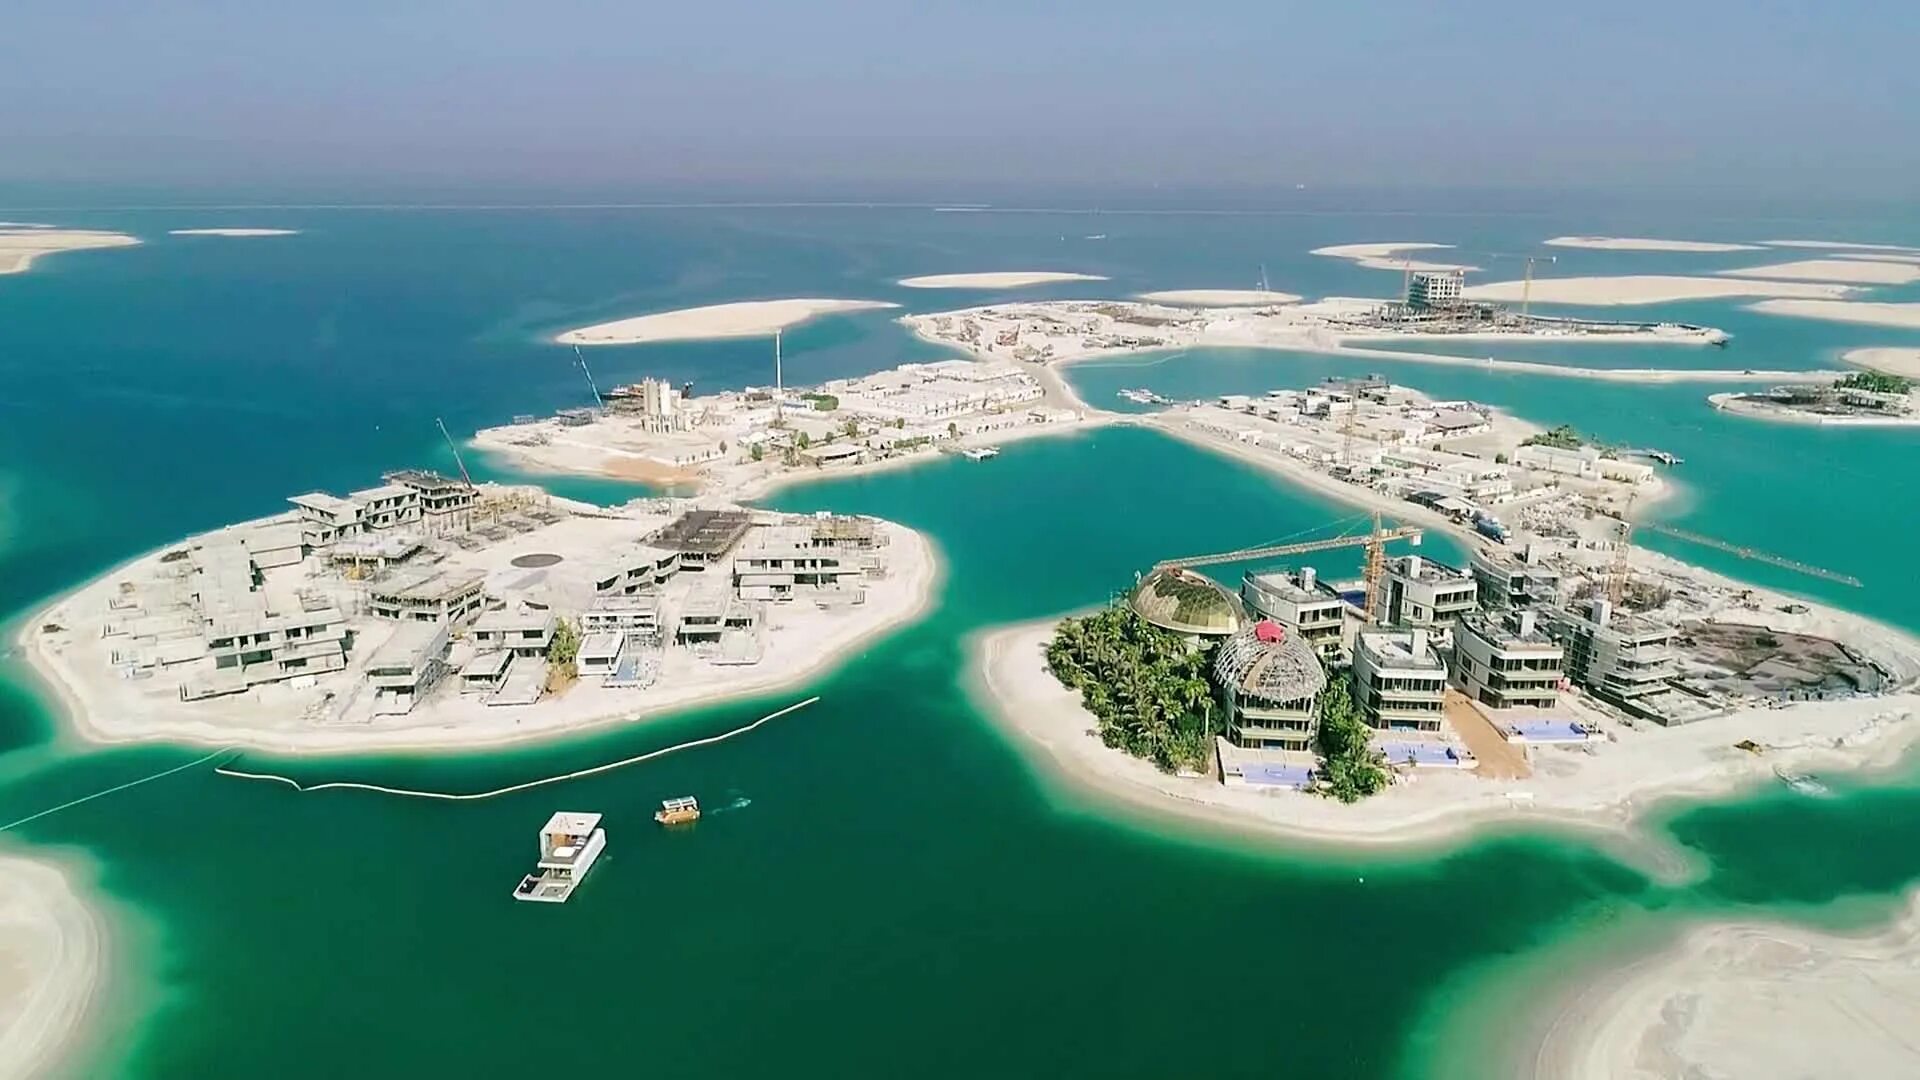 Man made world. Архипелаг мир в Дубае. Искусственный архипелаг мир в Дубае. Уорд Айленд Дубай. Остров Дейра Дубай.